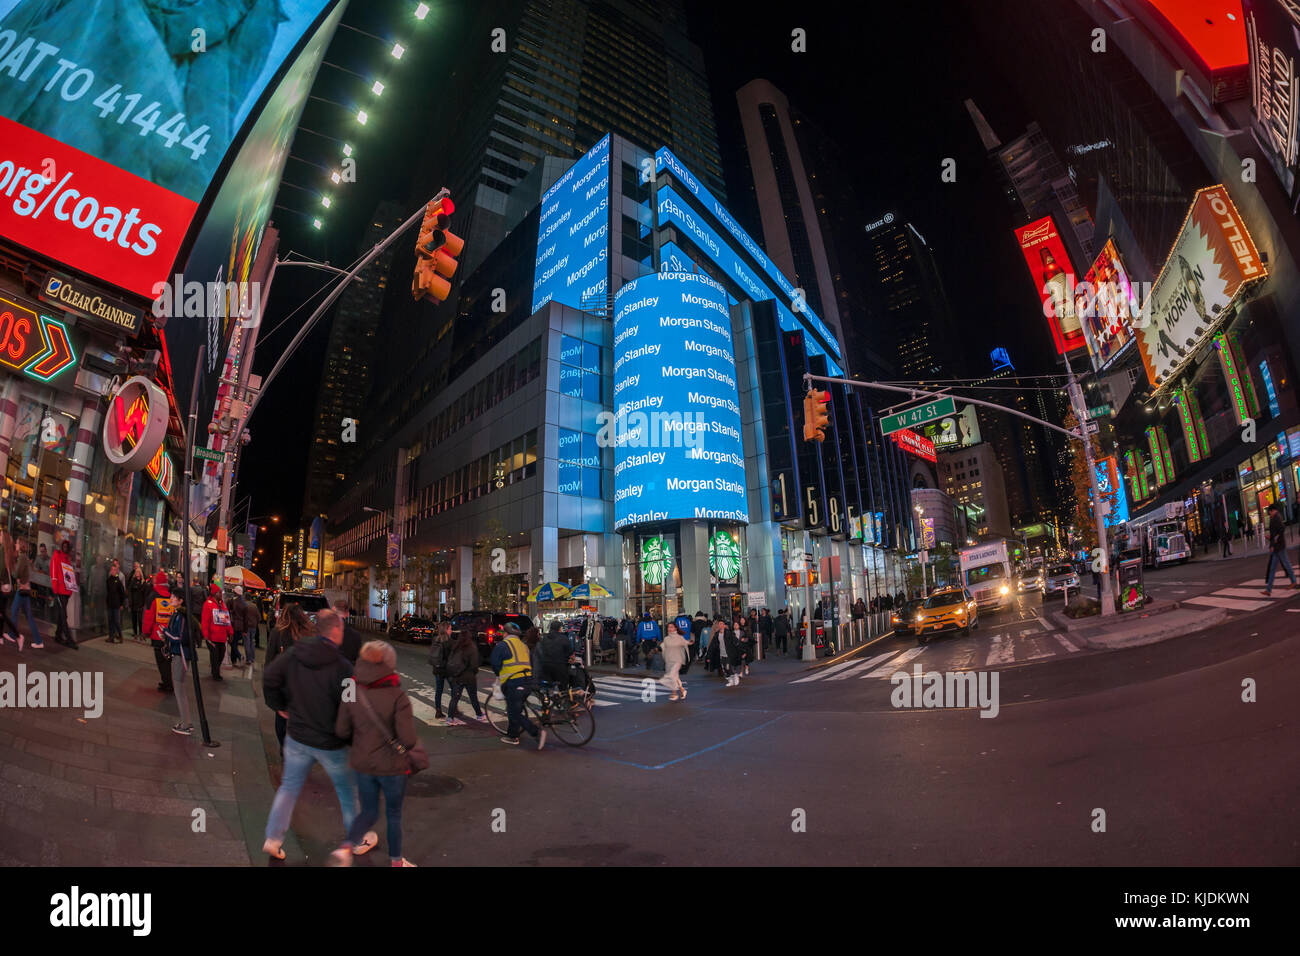 Morgan Stanley s'engage dans l'auto-promotion sur l'affichage numérique sur leurs capacités à New York le mardi, novembre 21, 2017. (© richard b. levine) Banque D'Images